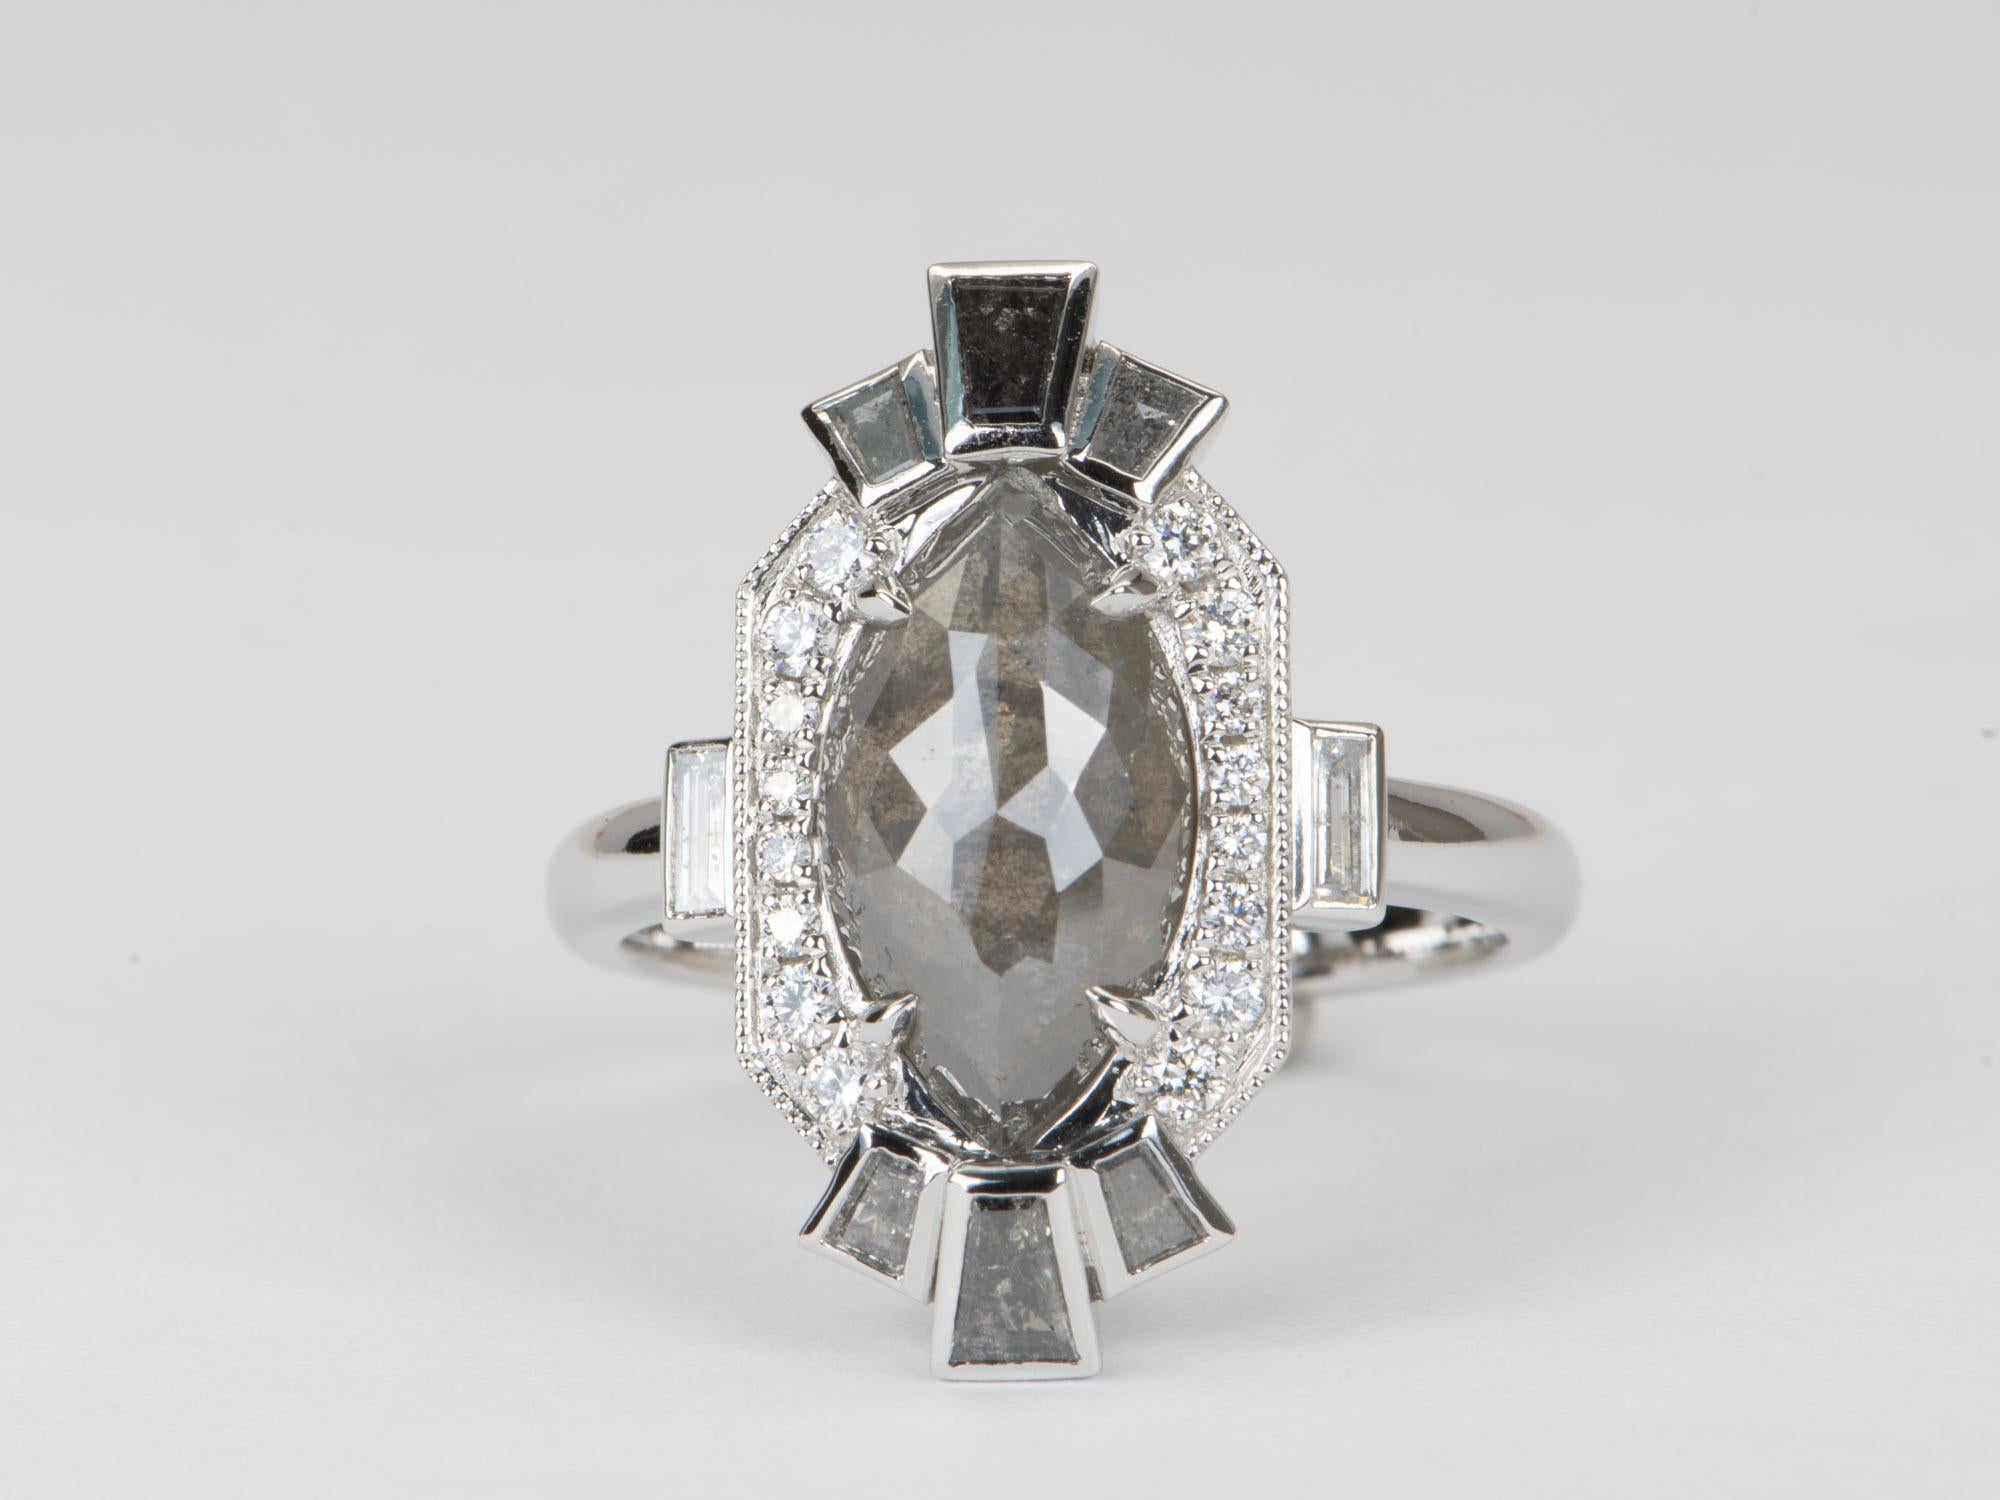 Dieser einzigartige Ring ist mit einem Salz- und Pfeffer-Diamanten von 3,66 Karat besetzt, der in luxuriösem 14-karätigem Weißgold gefasst und von einem einzigartigen Halo aus spitz zulaufenden Baguette- und runden Brillanten umgeben ist. Das